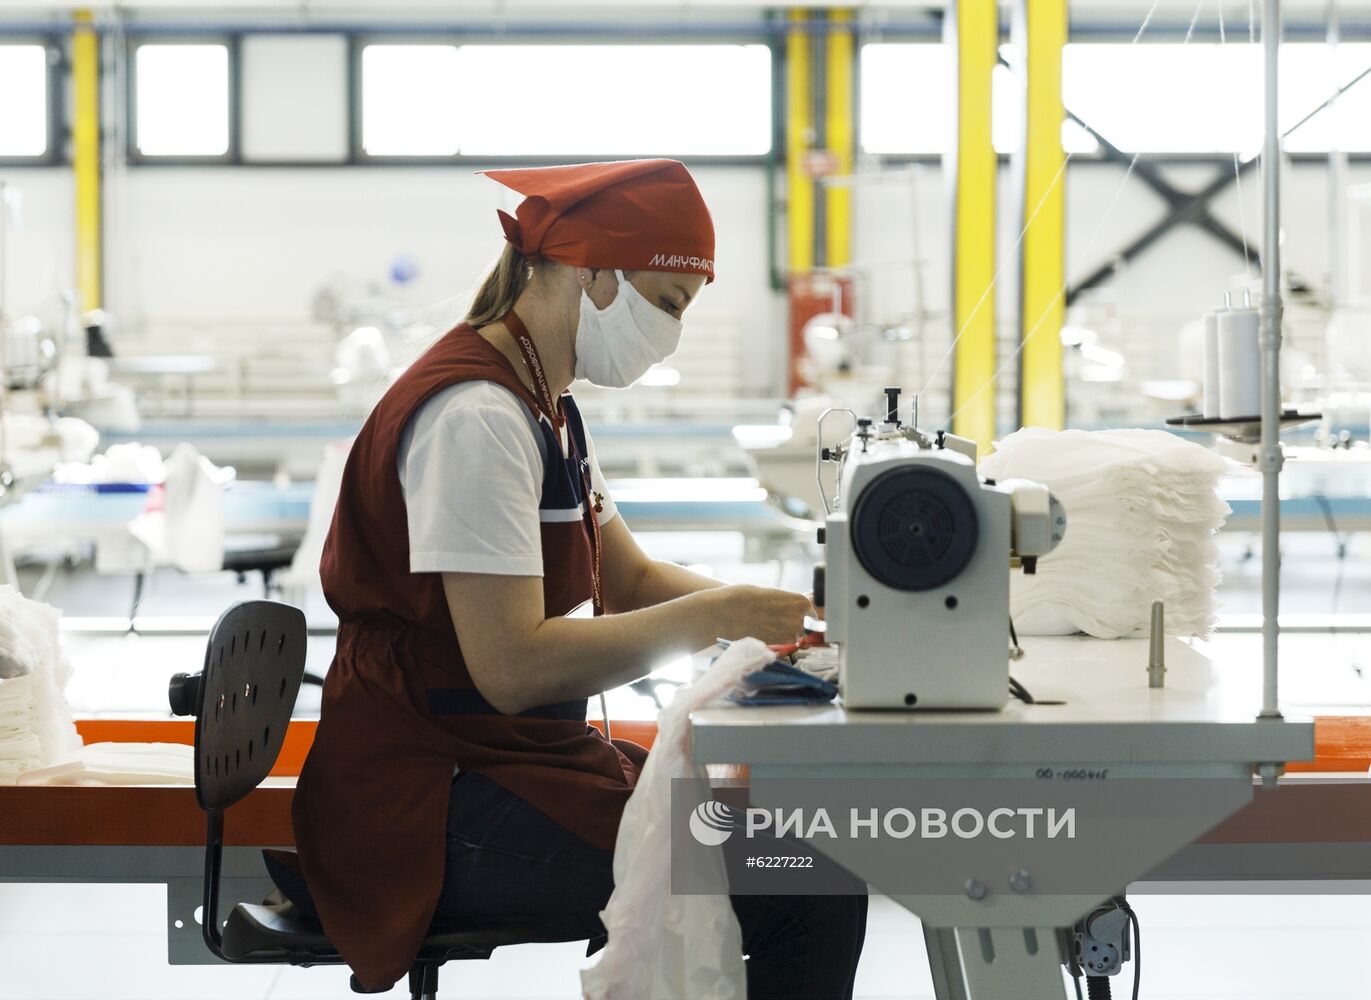 Производство медицинских масок и защитных костюмов на заводе компании Bosco di Ciliegi 